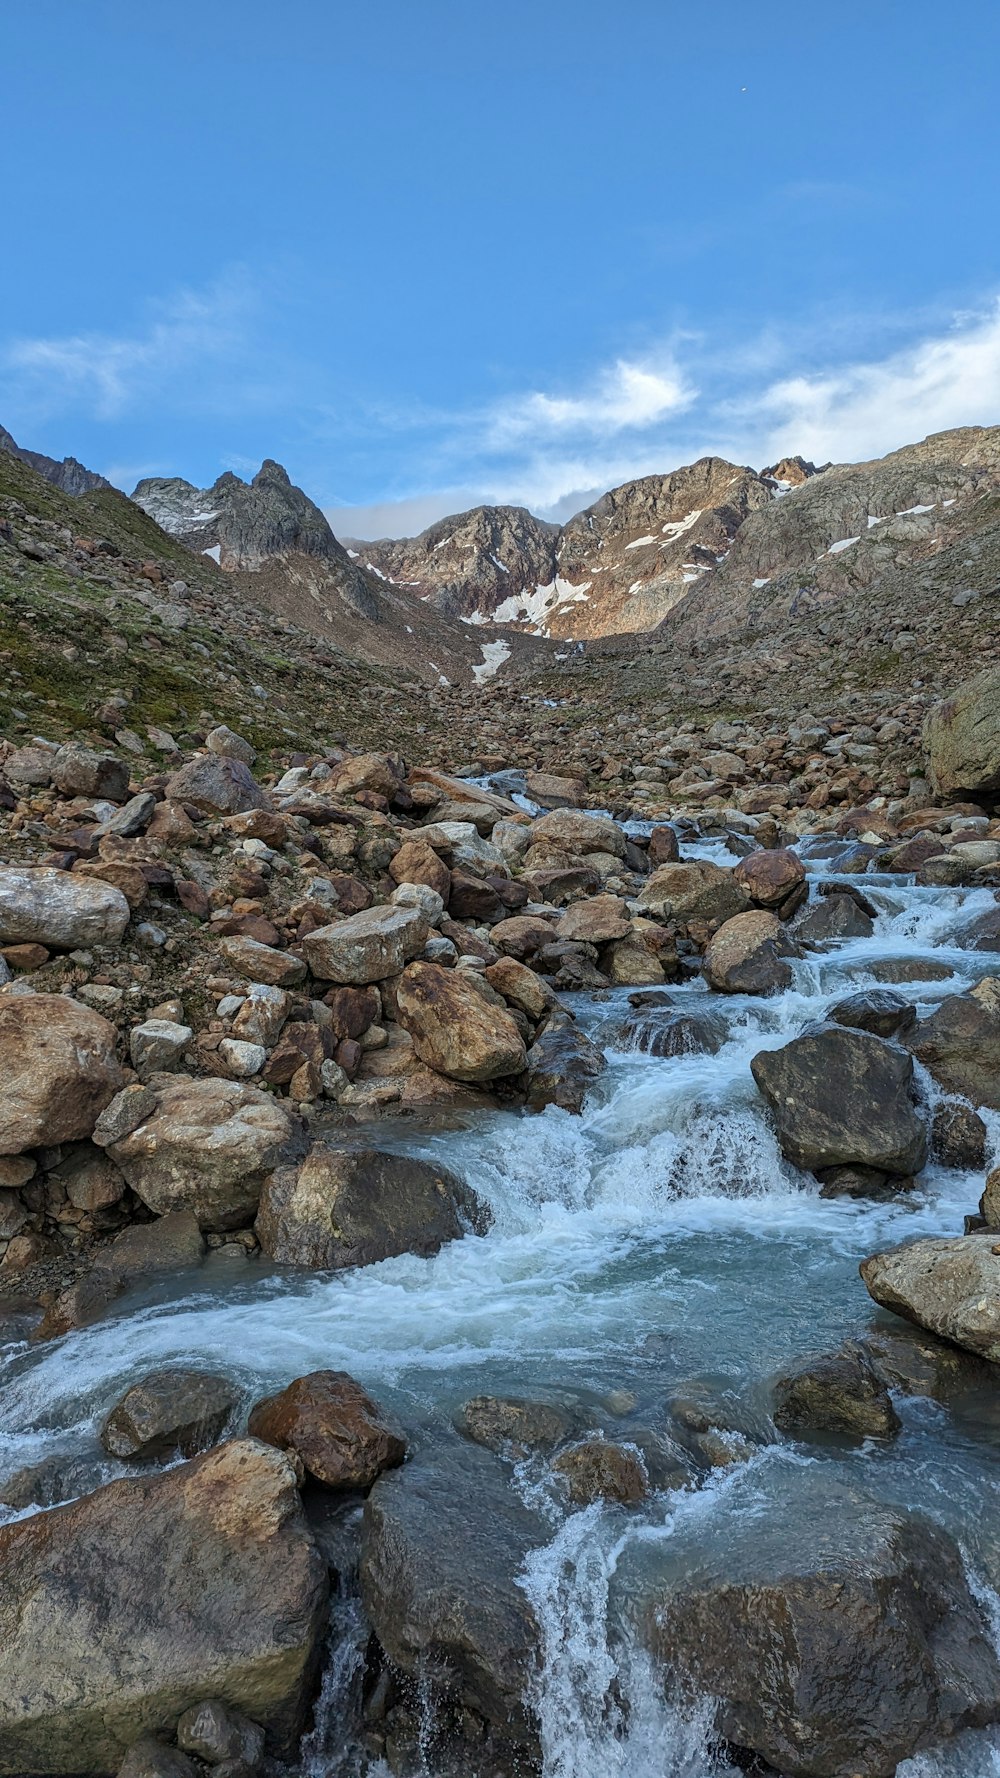 a mountain stream running through a rocky valley